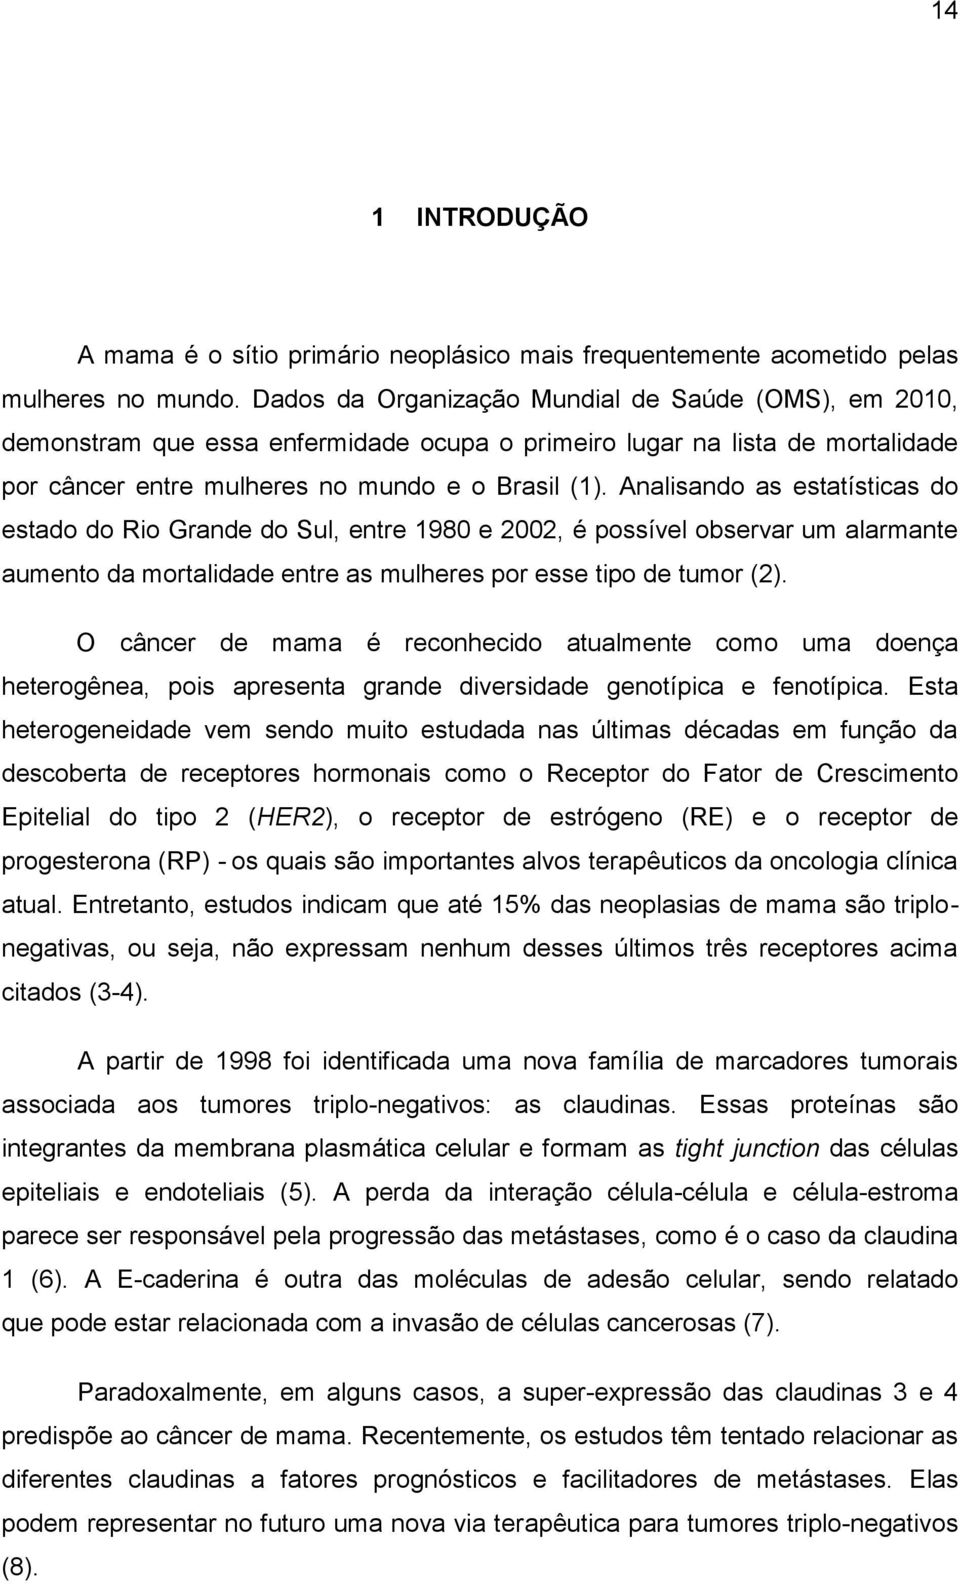 Analisando as estatísticas do estado do Rio Grande do Sul, entre 1980 e 2002, é possível observar um alarmante aumento da mortalidade entre as mulheres por esse tipo de tumor (2).